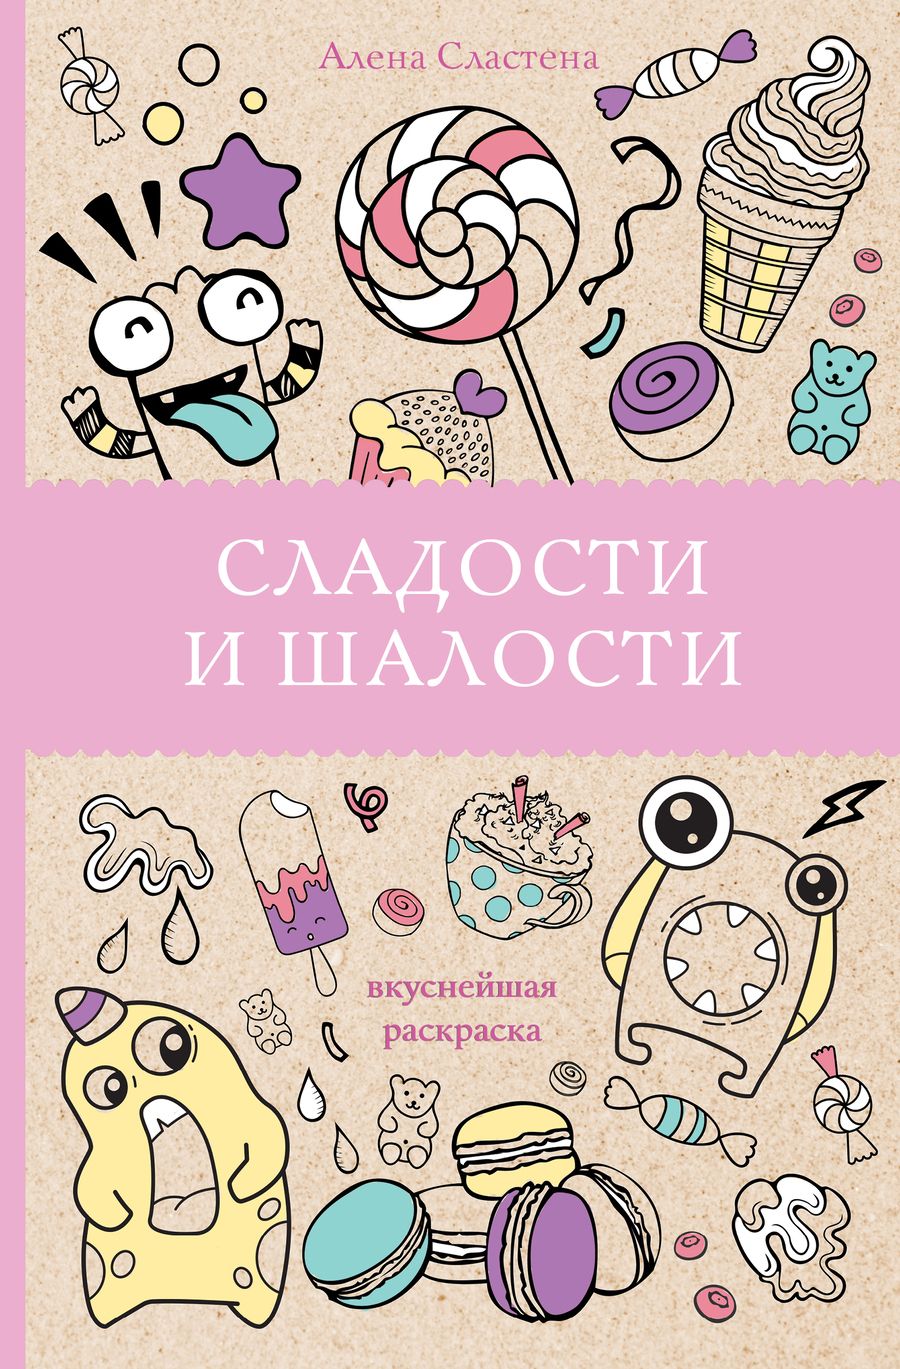 Обложка книги "Алена Сластена: Сладости и шалости. Вкуснейшая раскраска"